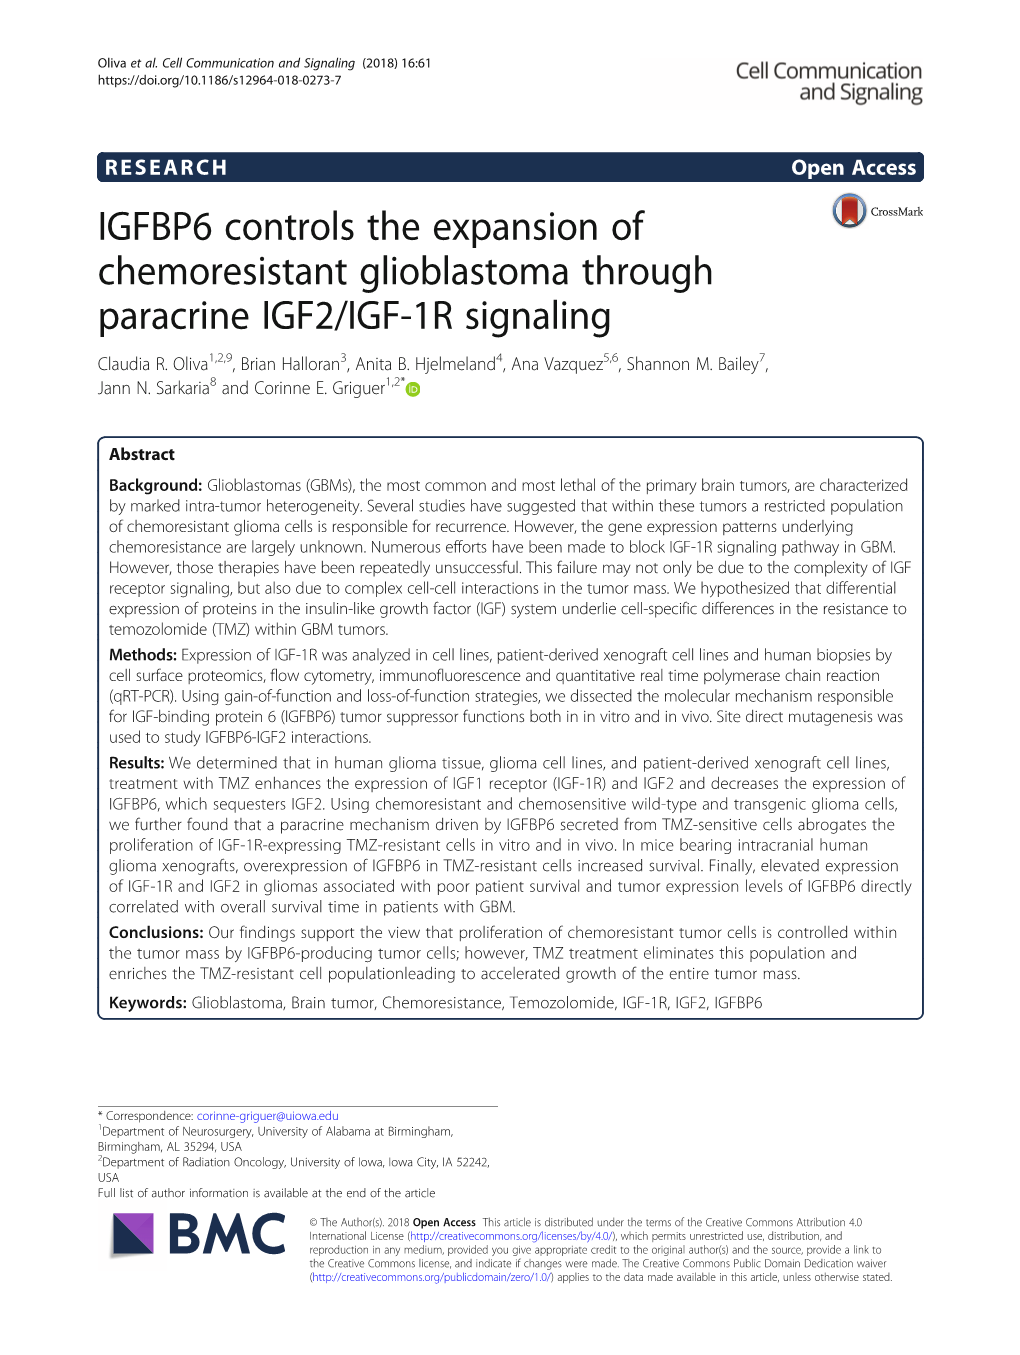 IGFBP6 Controls the Expansion of Chemoresistant Glioblastoma Through Paracrine IGF2/IGF-1R Signaling Claudia R